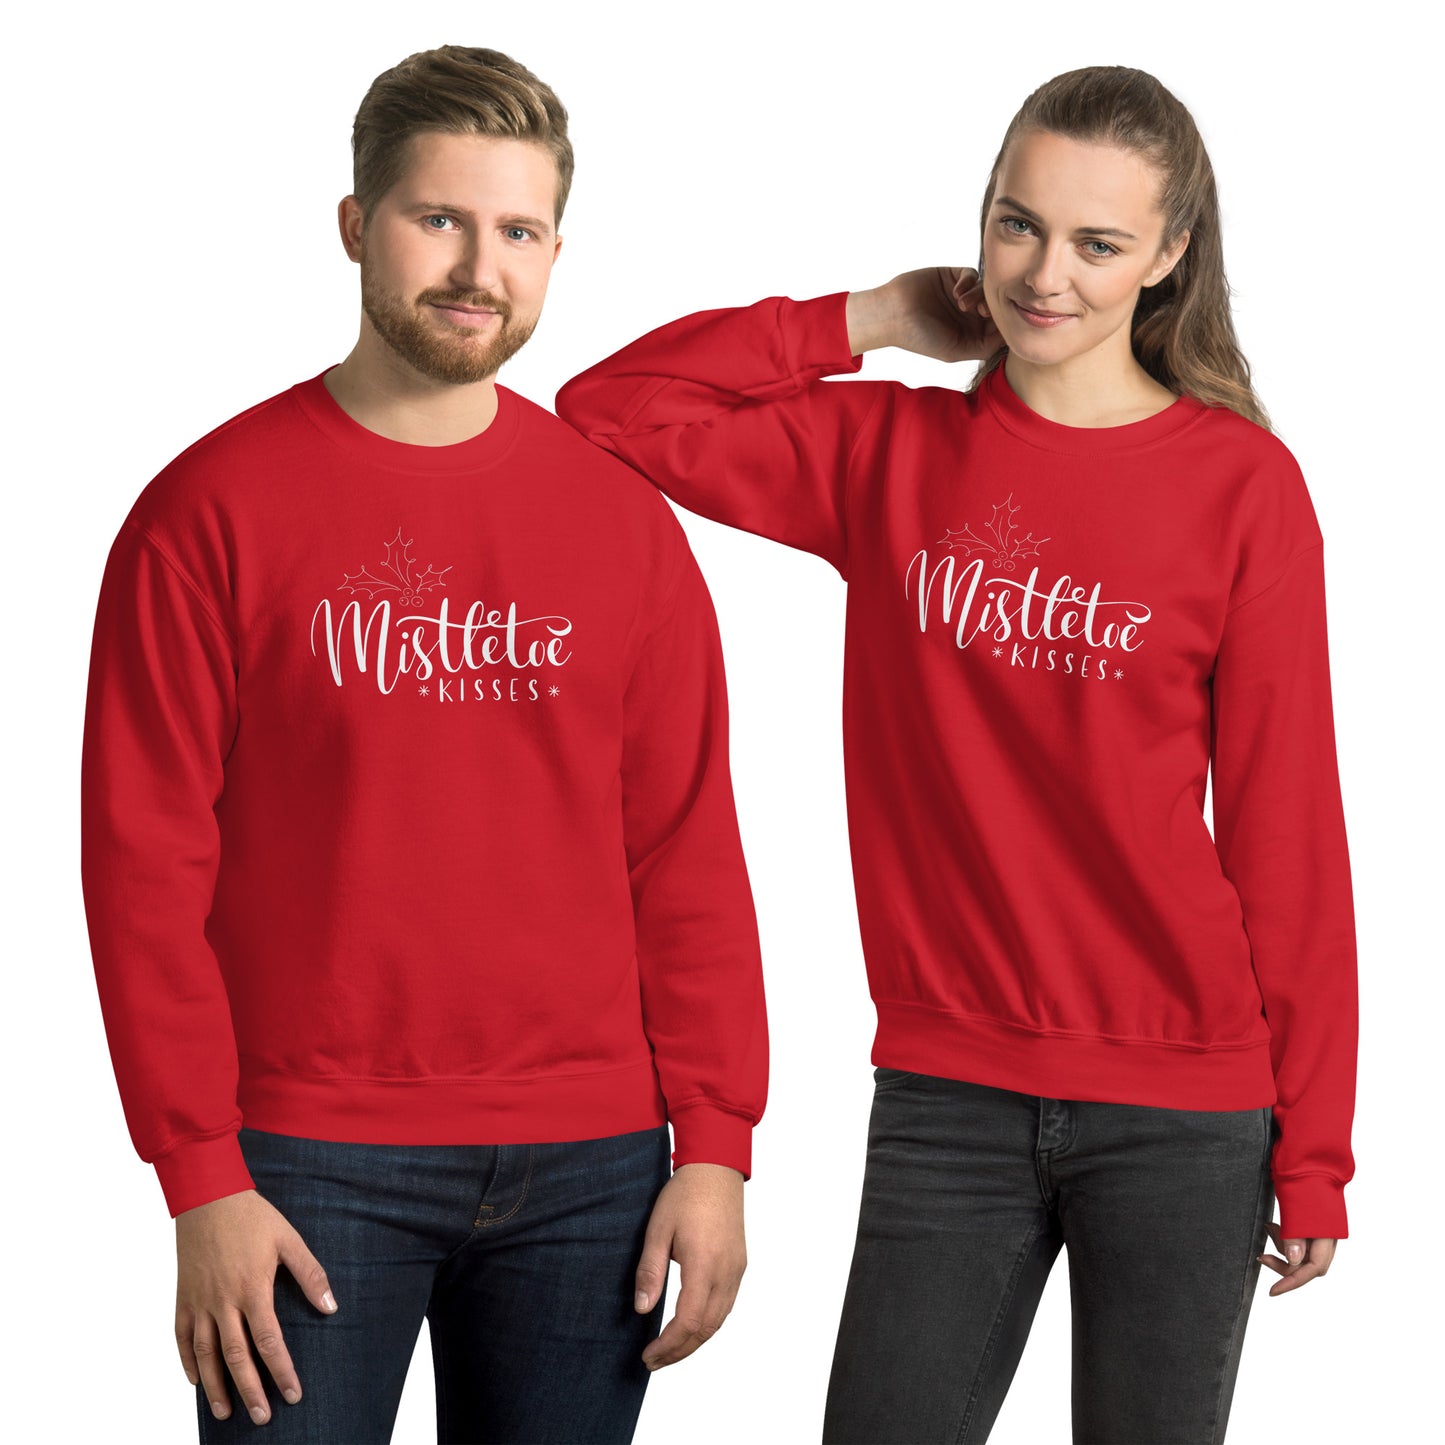 Mistletoe Kisses Sweatshirt